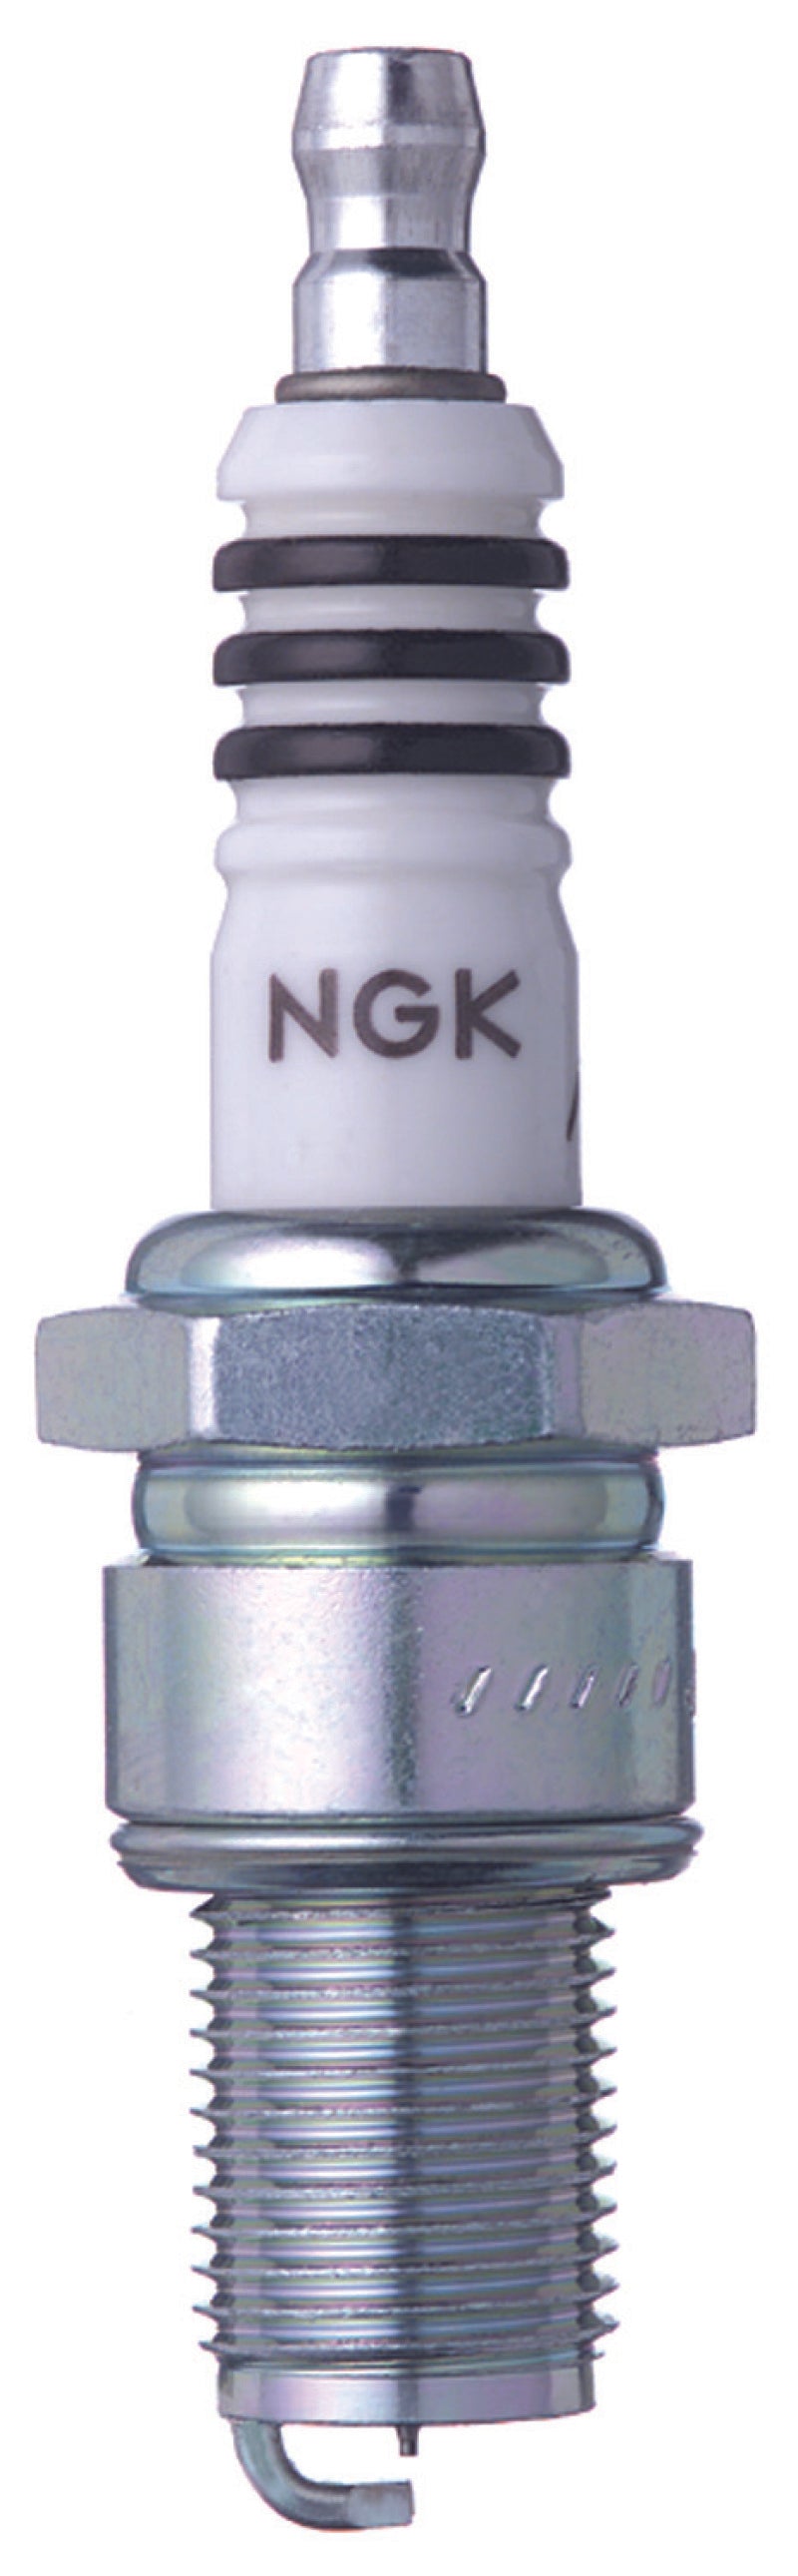 NGK Iridium Spark Plug Box of 4 (BR8EIX) - eliteracefab.com